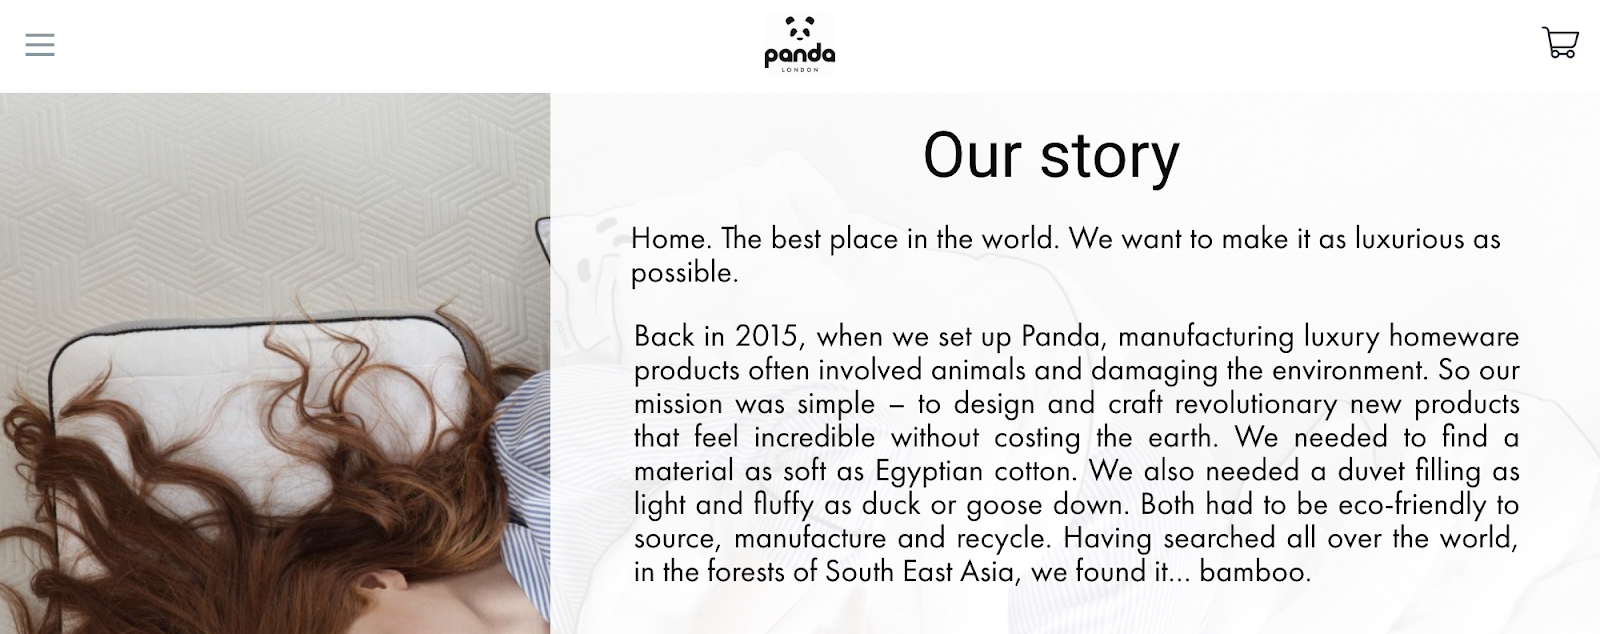 brand story screenshot from homeware brand panda